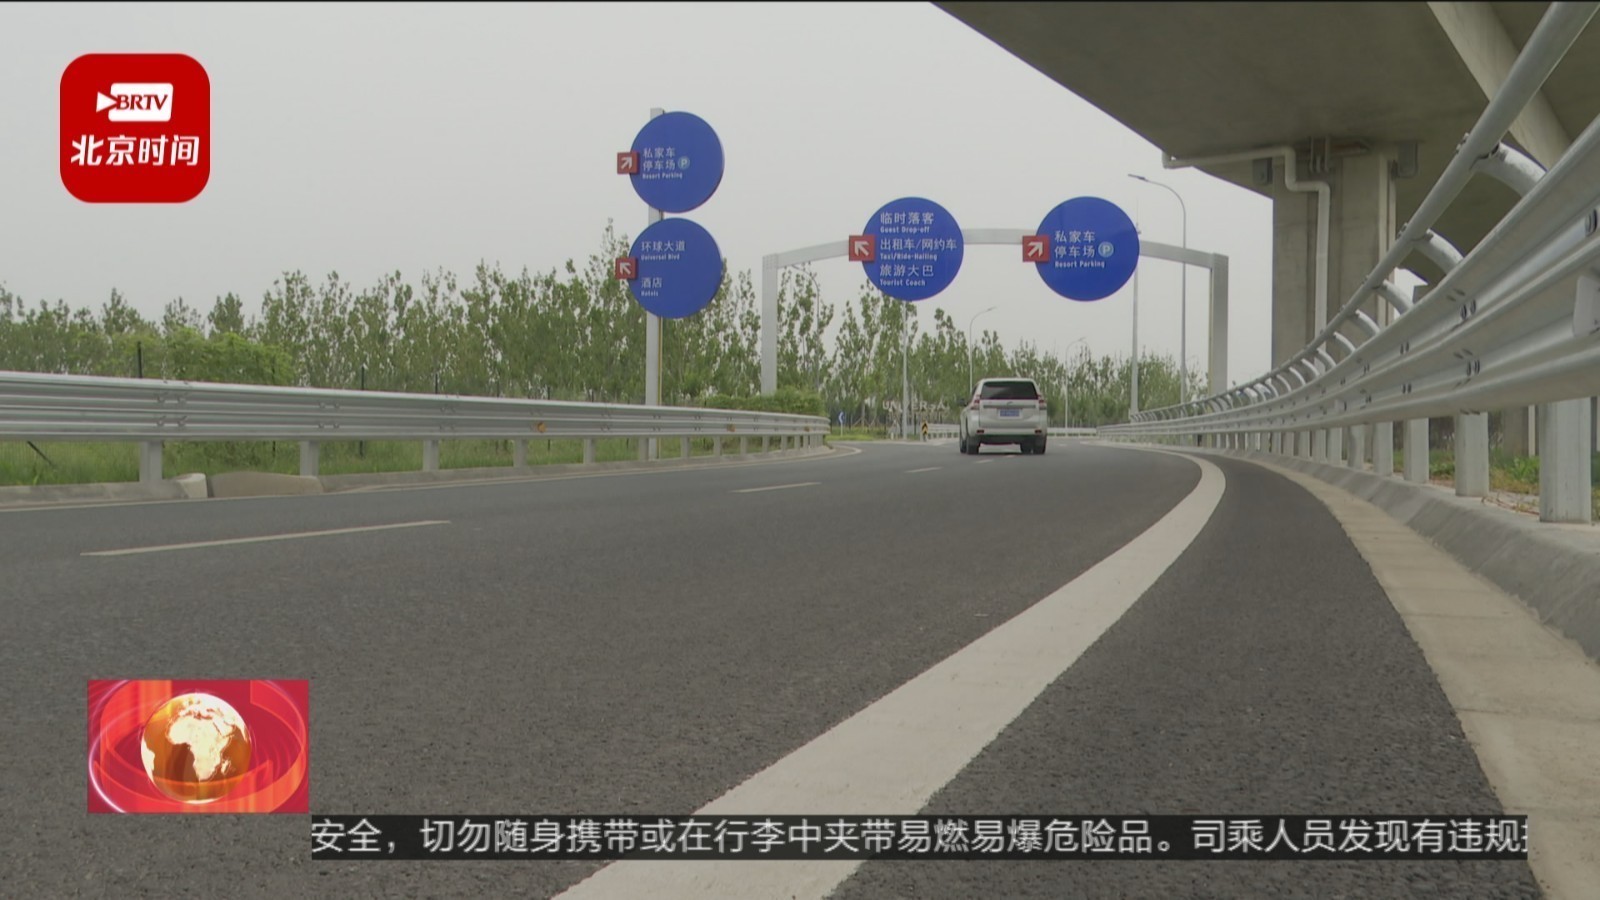 北京环球度假区将正式开园 交管部门发布出行提示